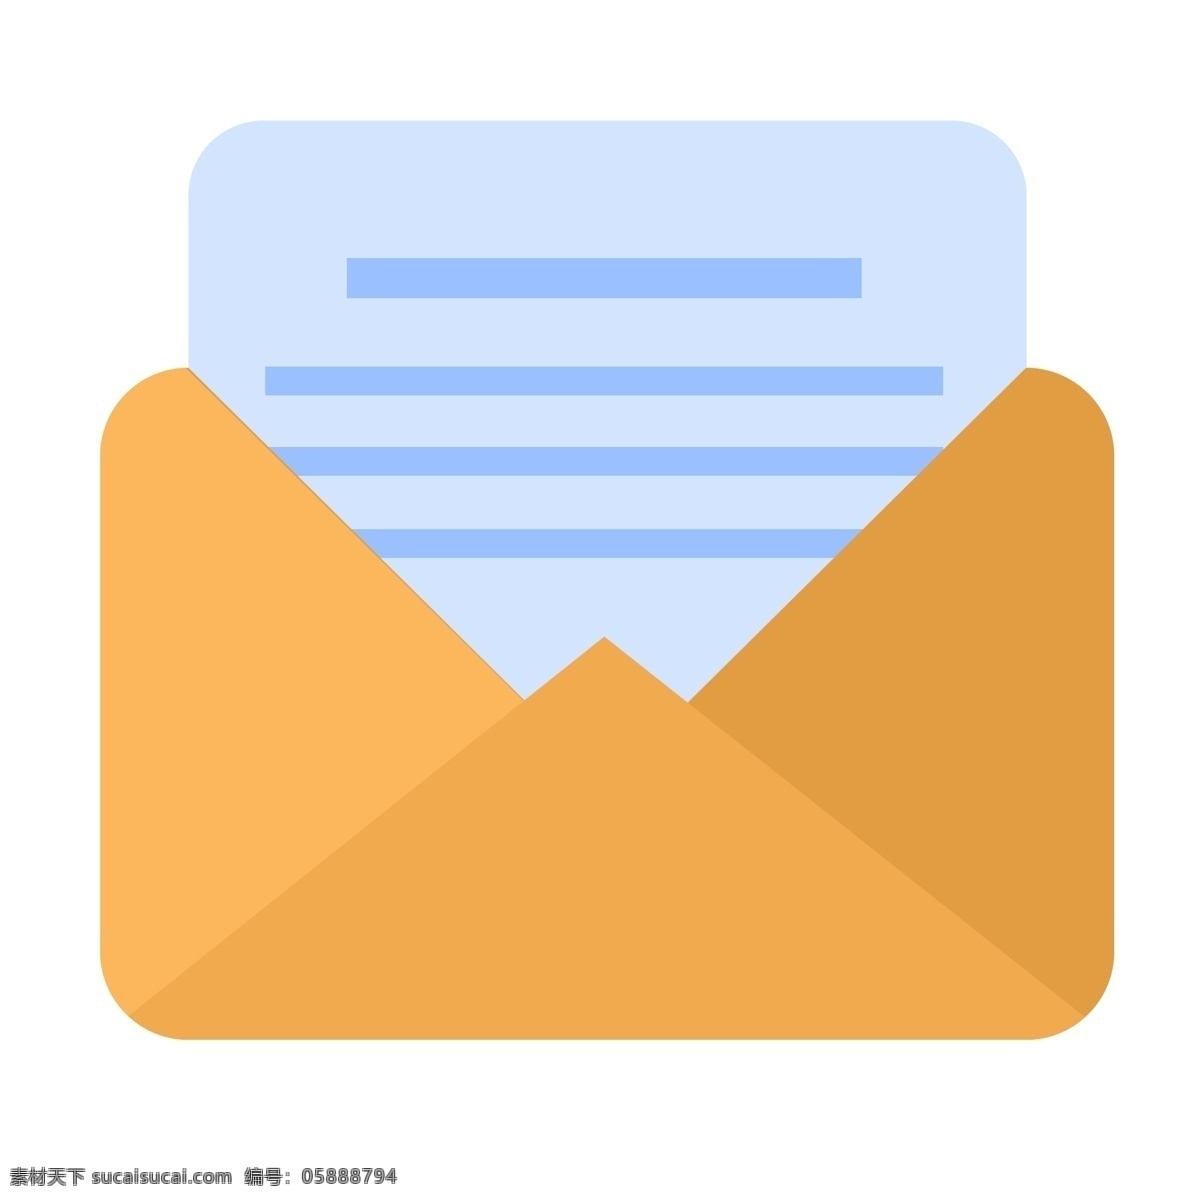 黄色 纸质 收发 邮件 小 图标 收到的邮件 名片 联系方式 发送重要文件 邮箱地址 通知 邮寄 收件箱 注意查看